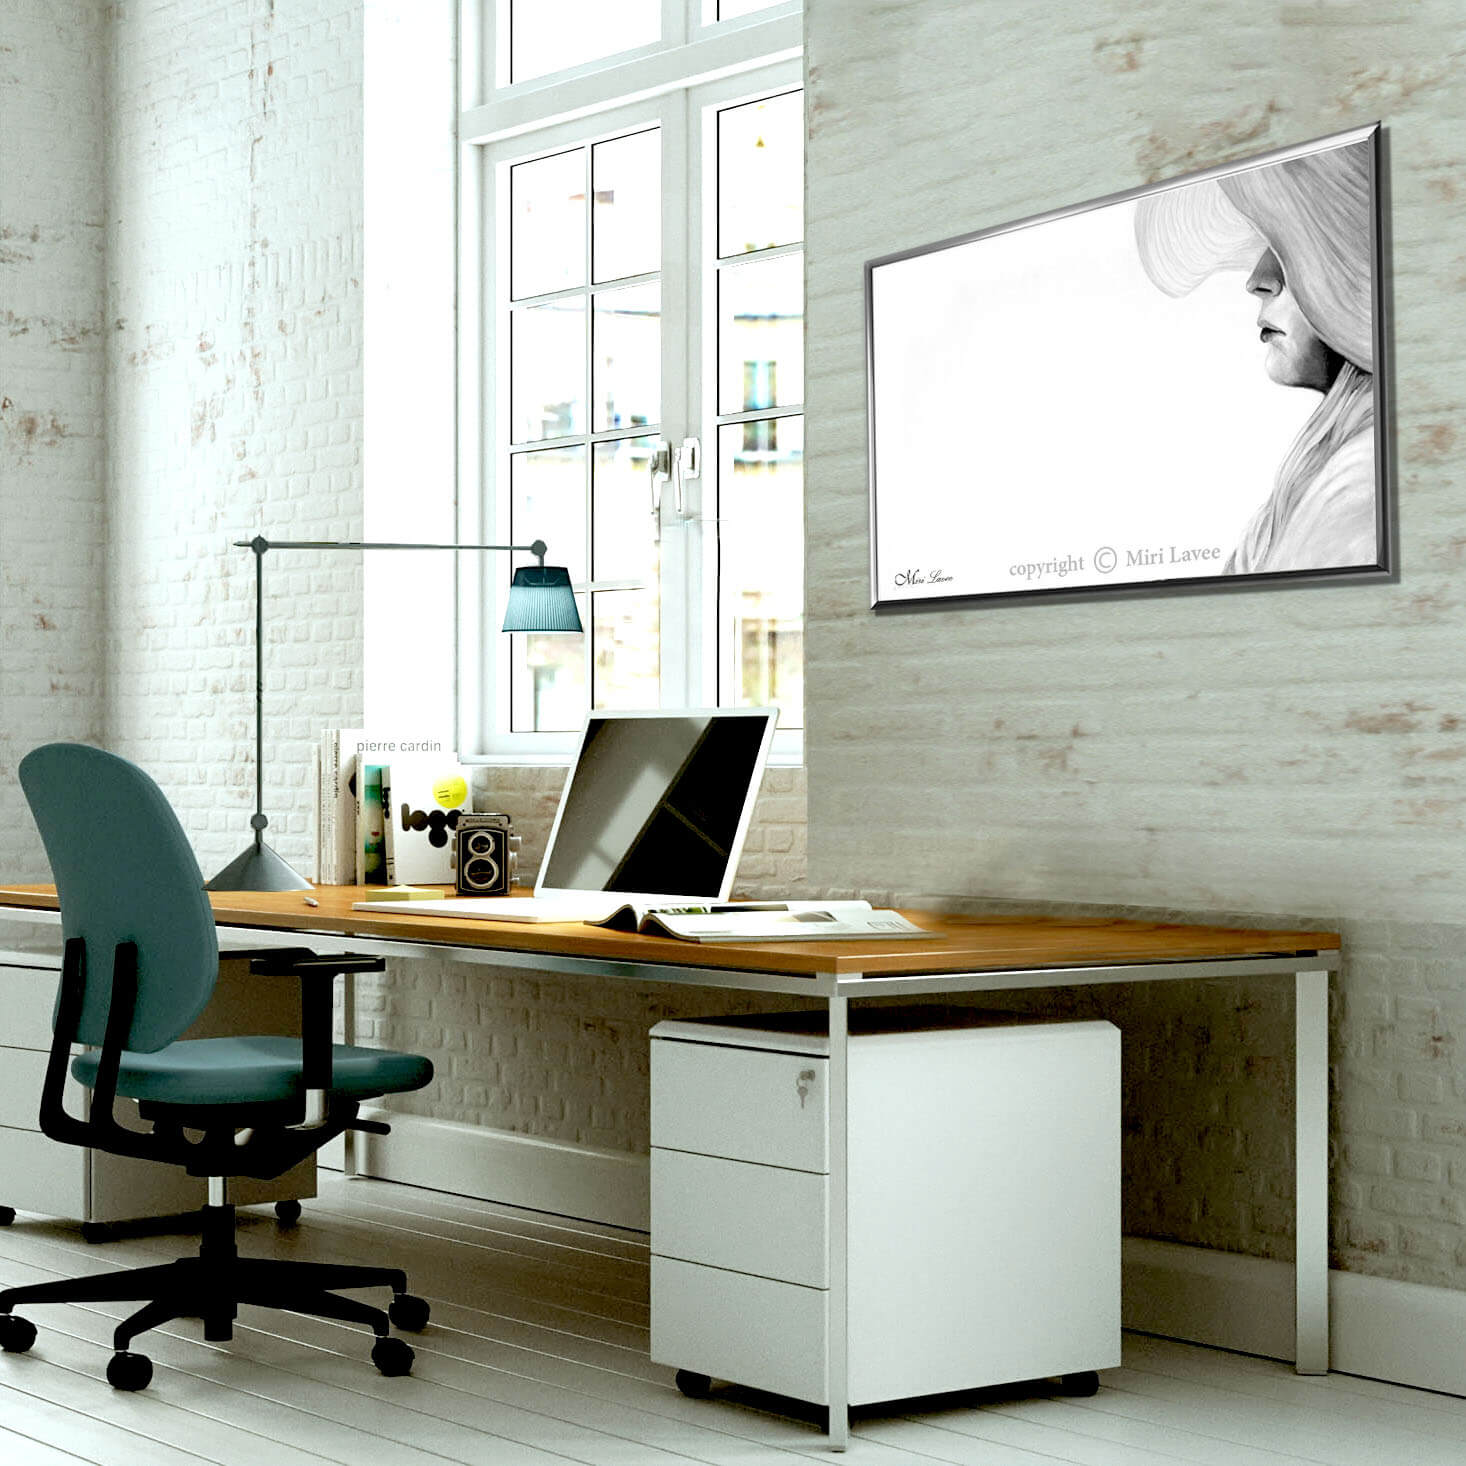 ציור של אישה עם כובע ציור לבן ואפור תמונה מרשימה בשקט ובפשטות שלה במשרד ביתי מעוצב ציירת מירי לביא